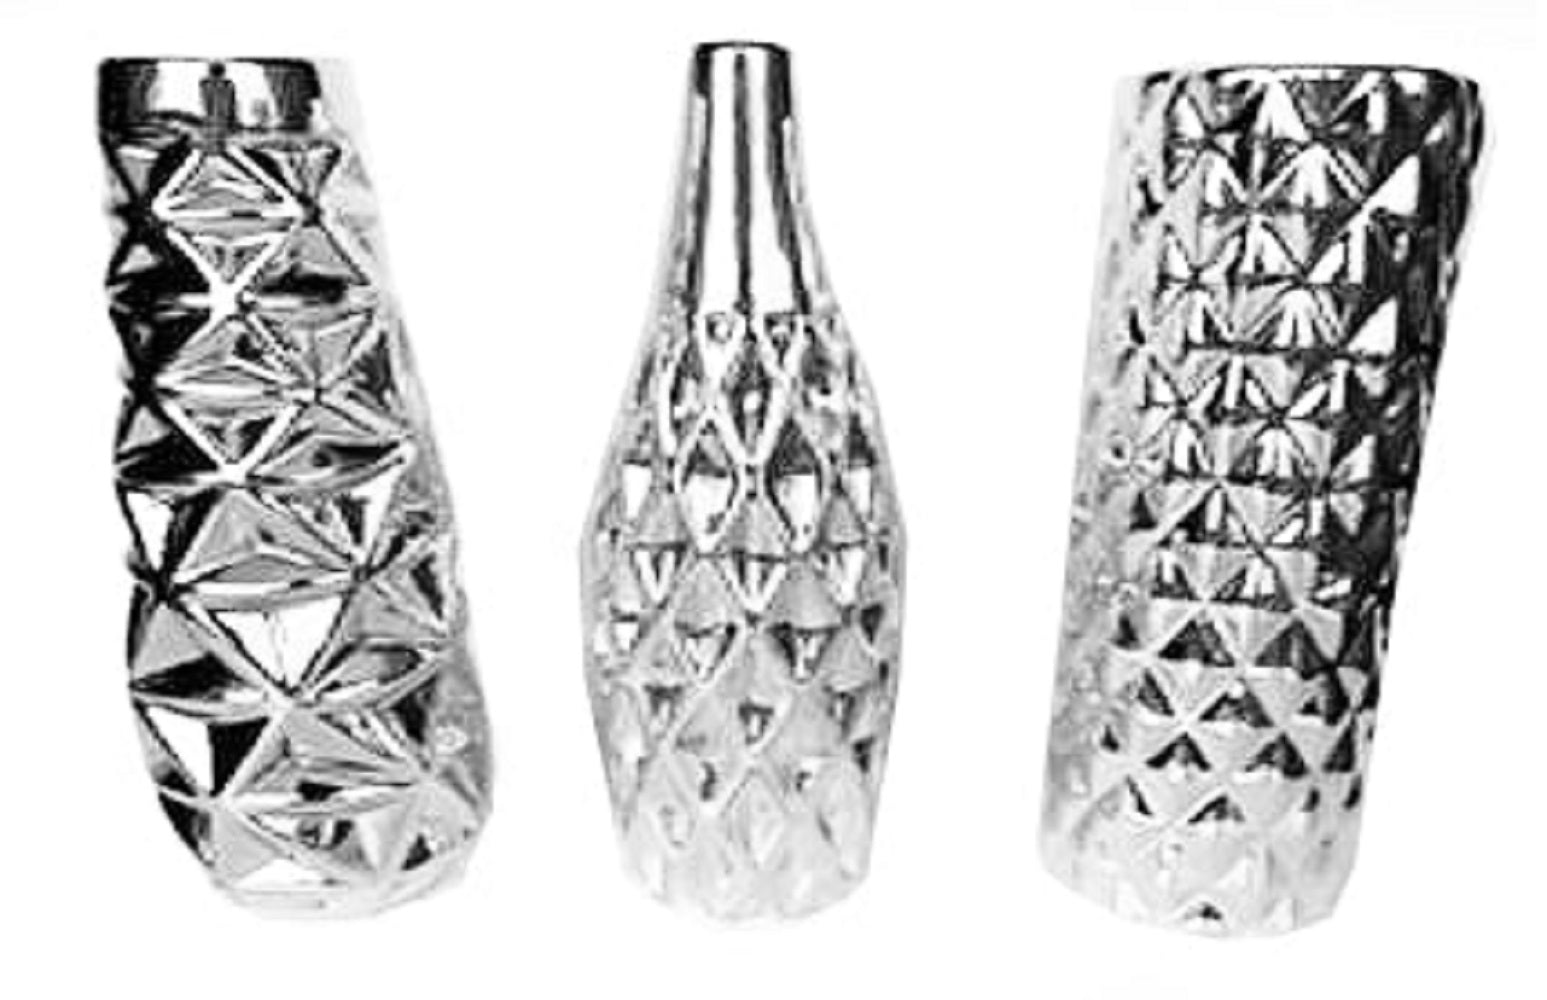 3 Piece Silver Vase Set - 11.5"